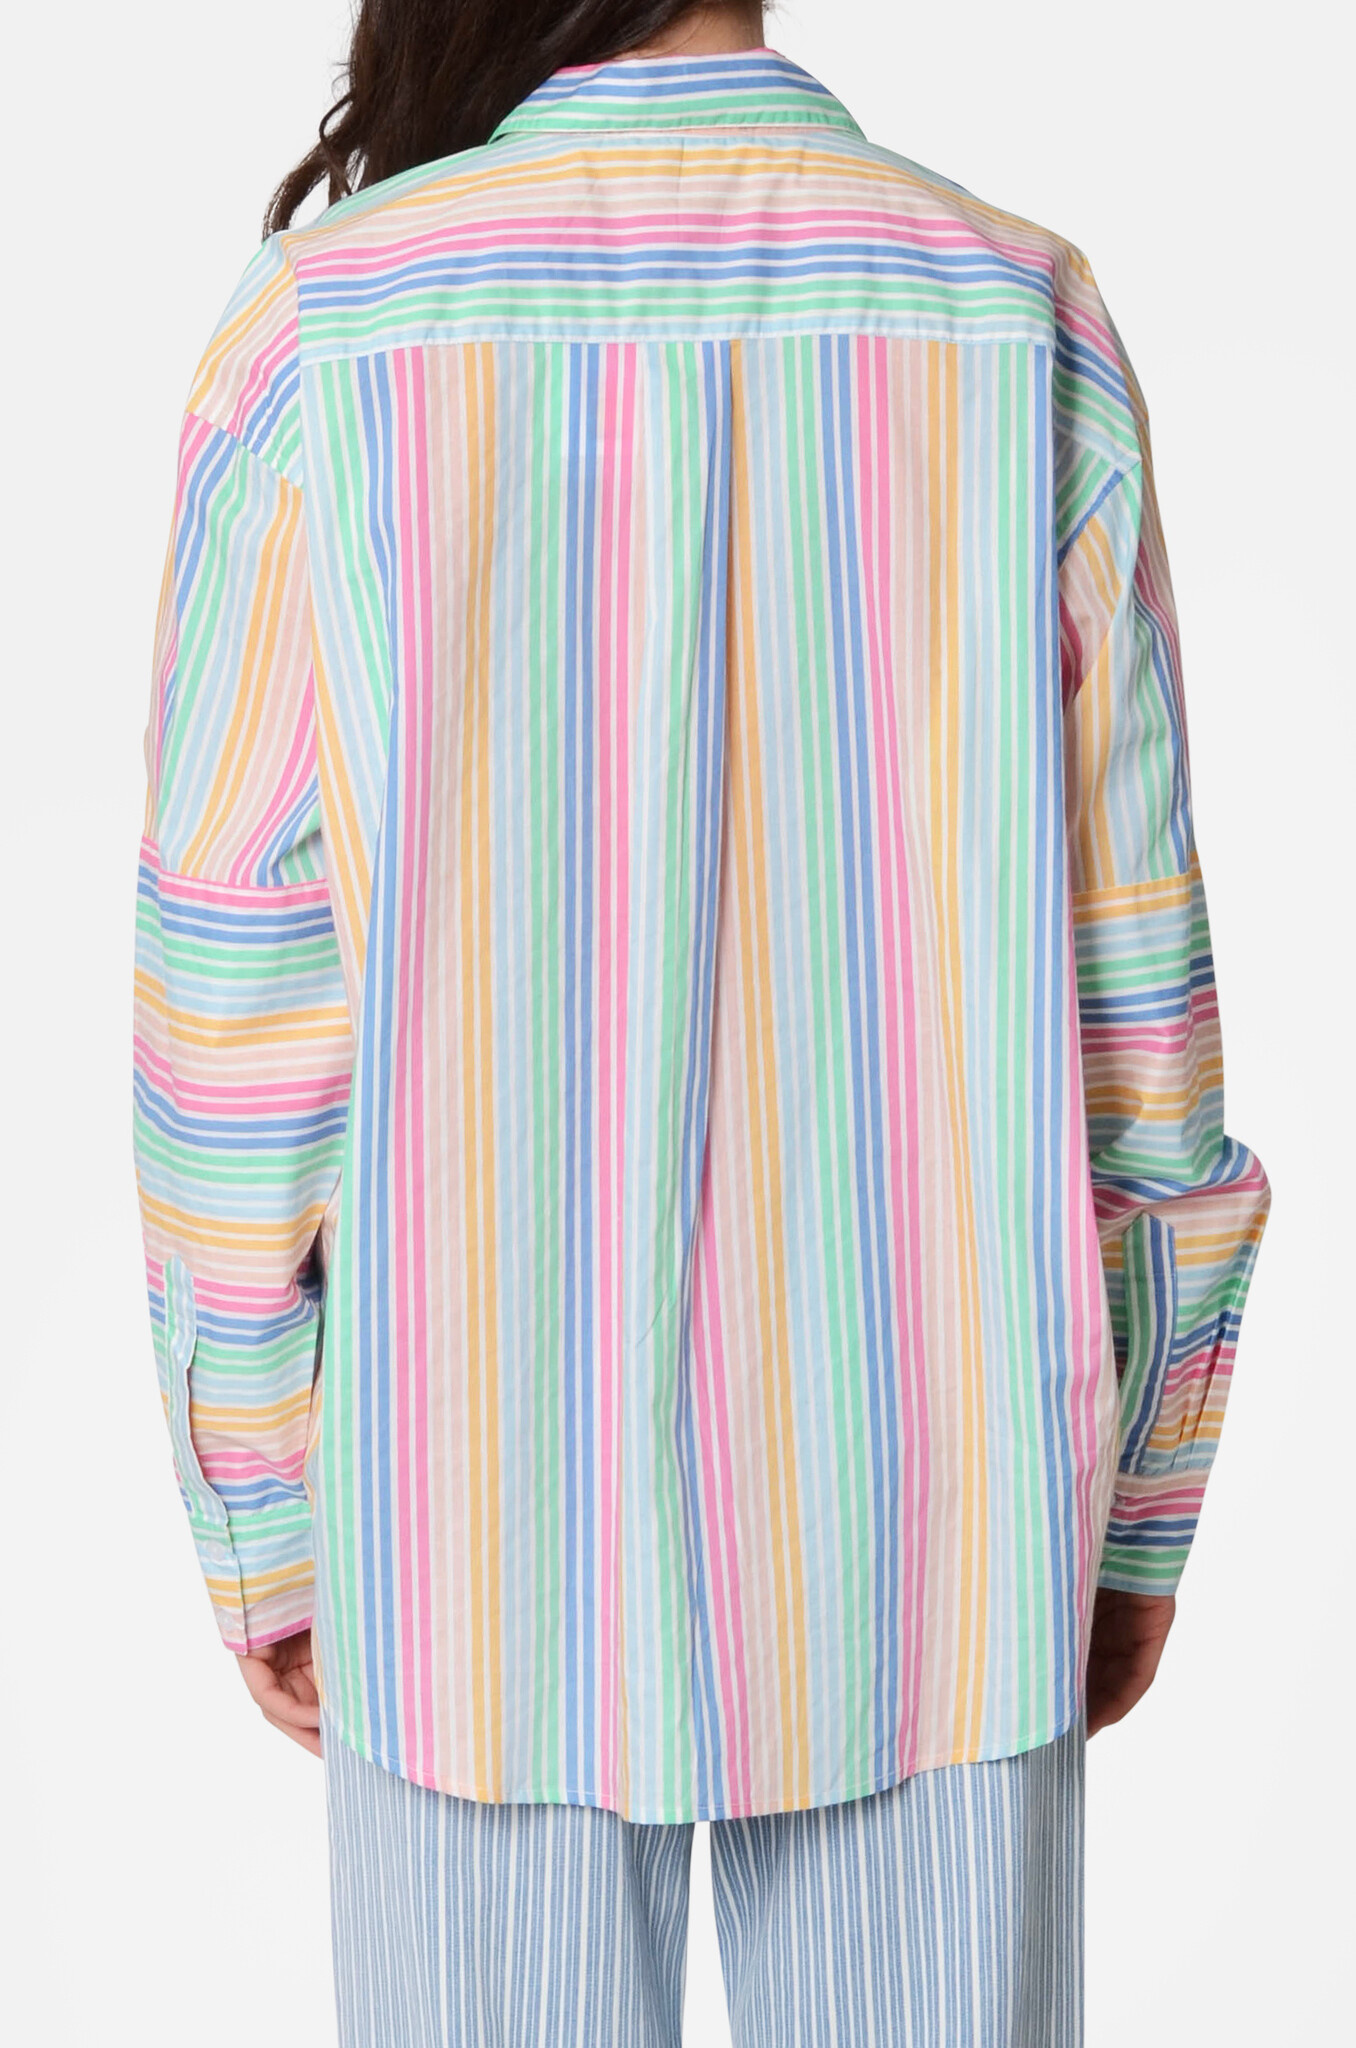 Diaz Shirt in Multicolour-4